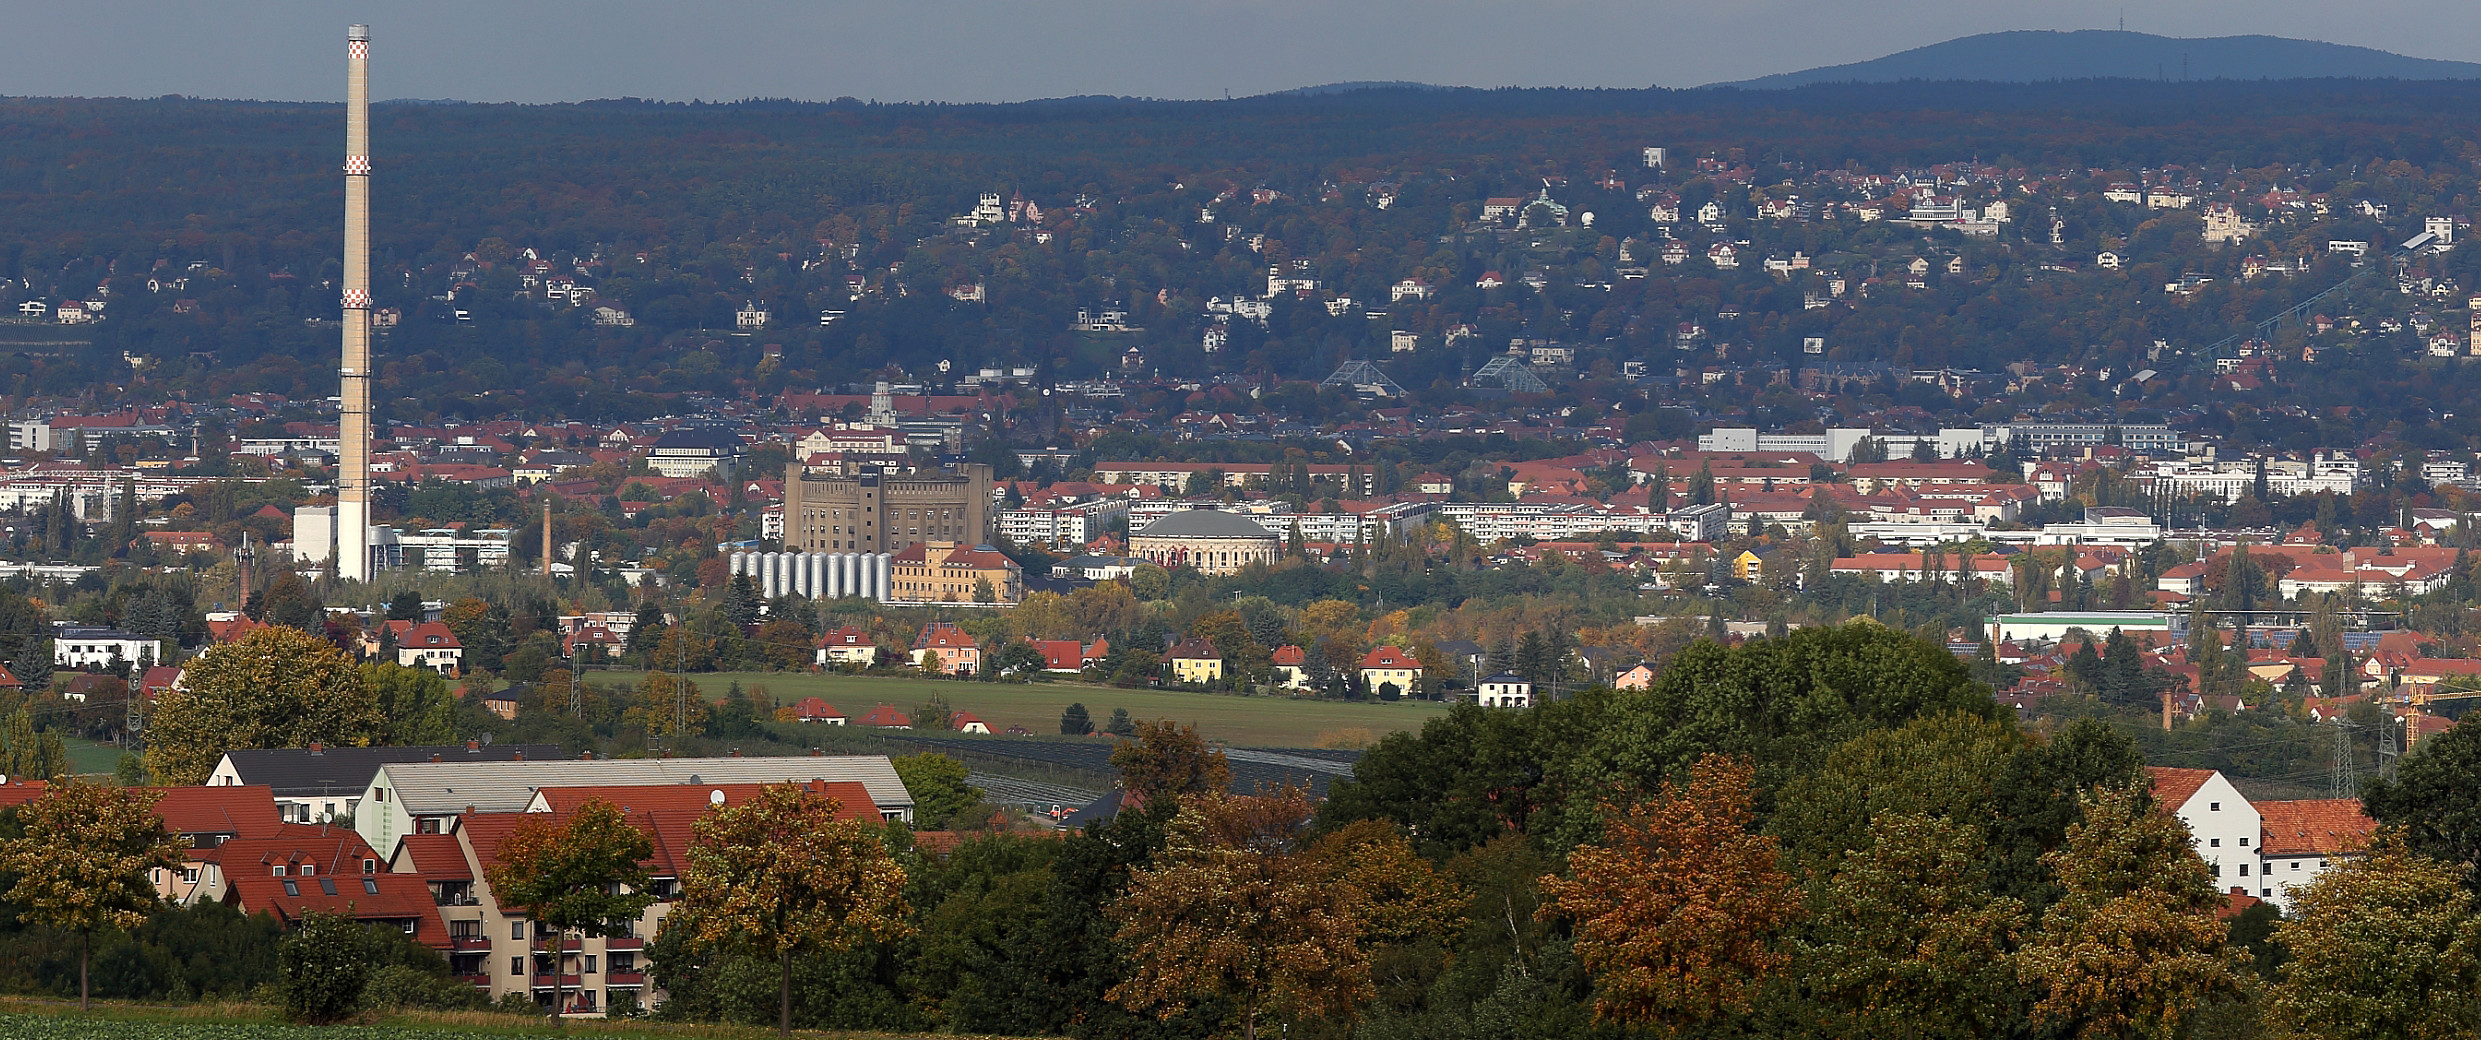 5 von 1500 beduetet der 5. Dresdenblick aus einem Panorama...